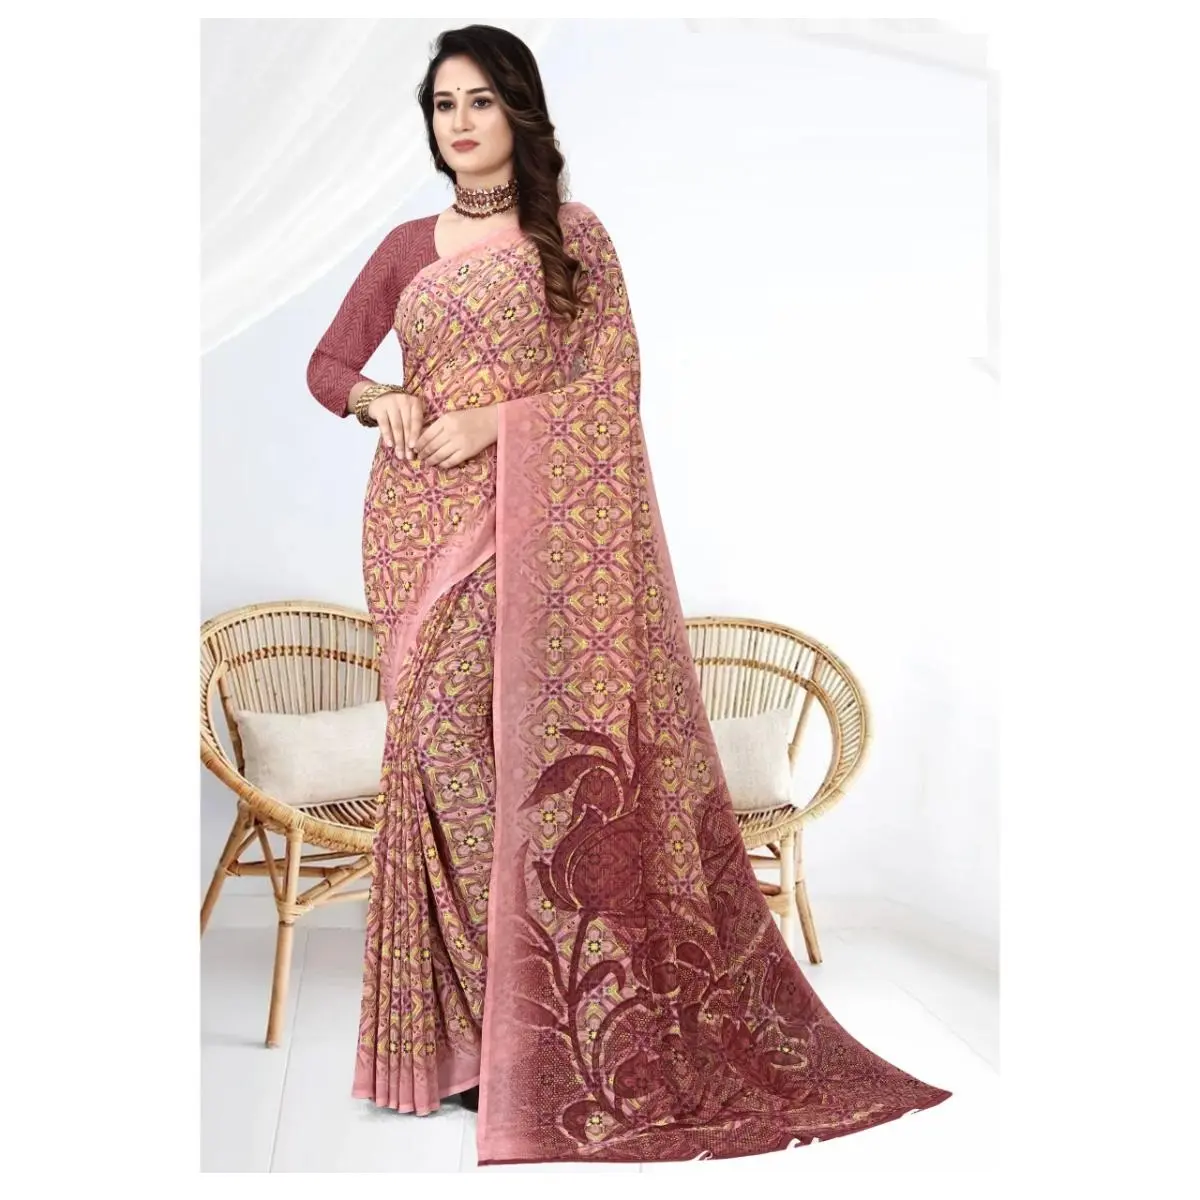 ملابس عِرقية هندية ساري نسائي من الجورجيت متعدد الألوان مع قطعة بلوزة إضافية من مصنع ومصدِّر هندي